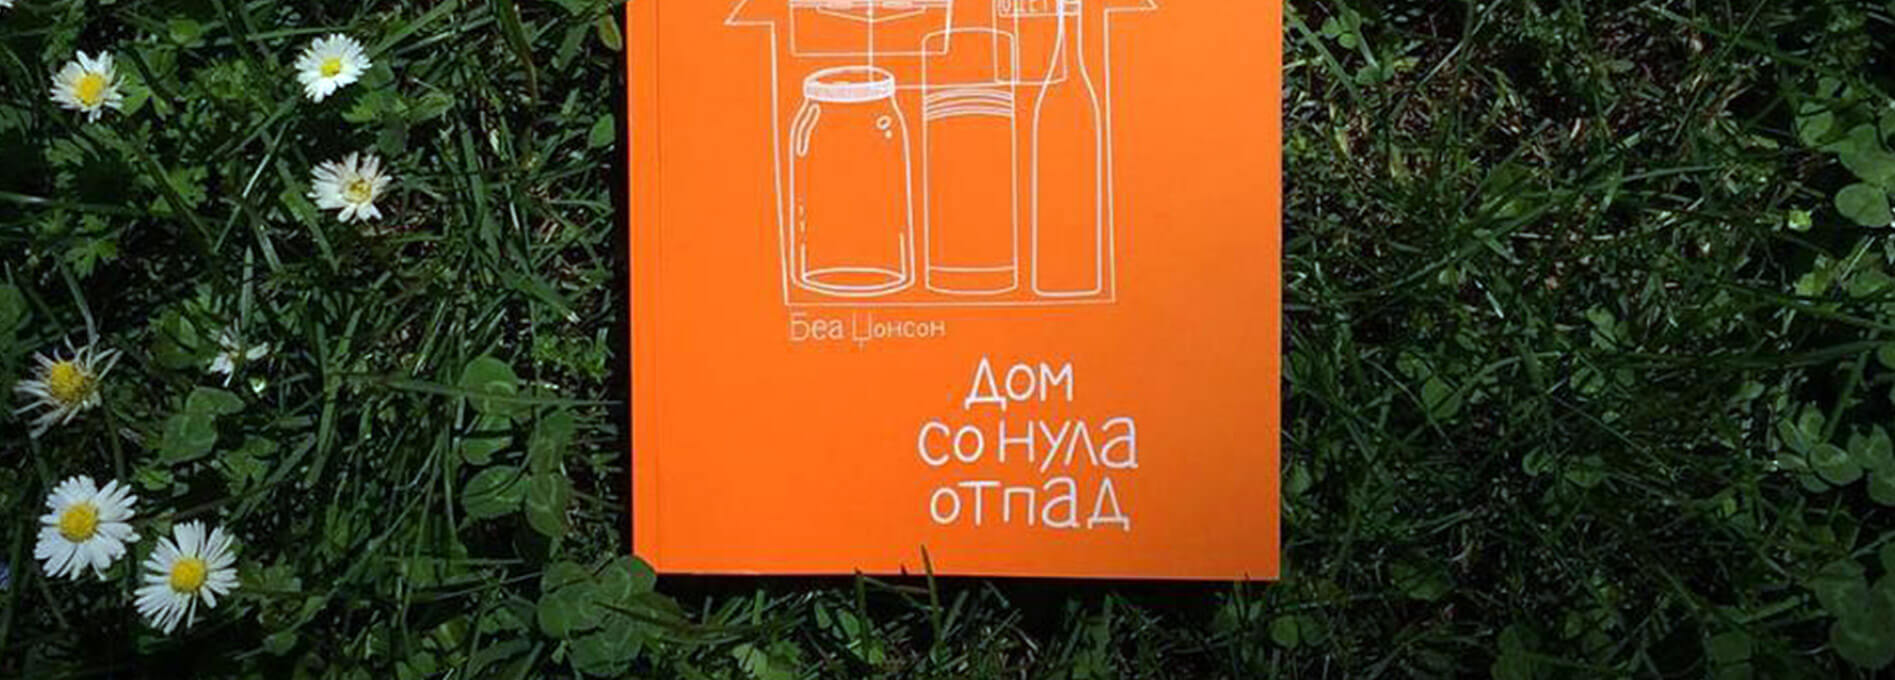 Промоција на книгата „Дом со нула отпад“ од Беа Џонсон на македонски јазик